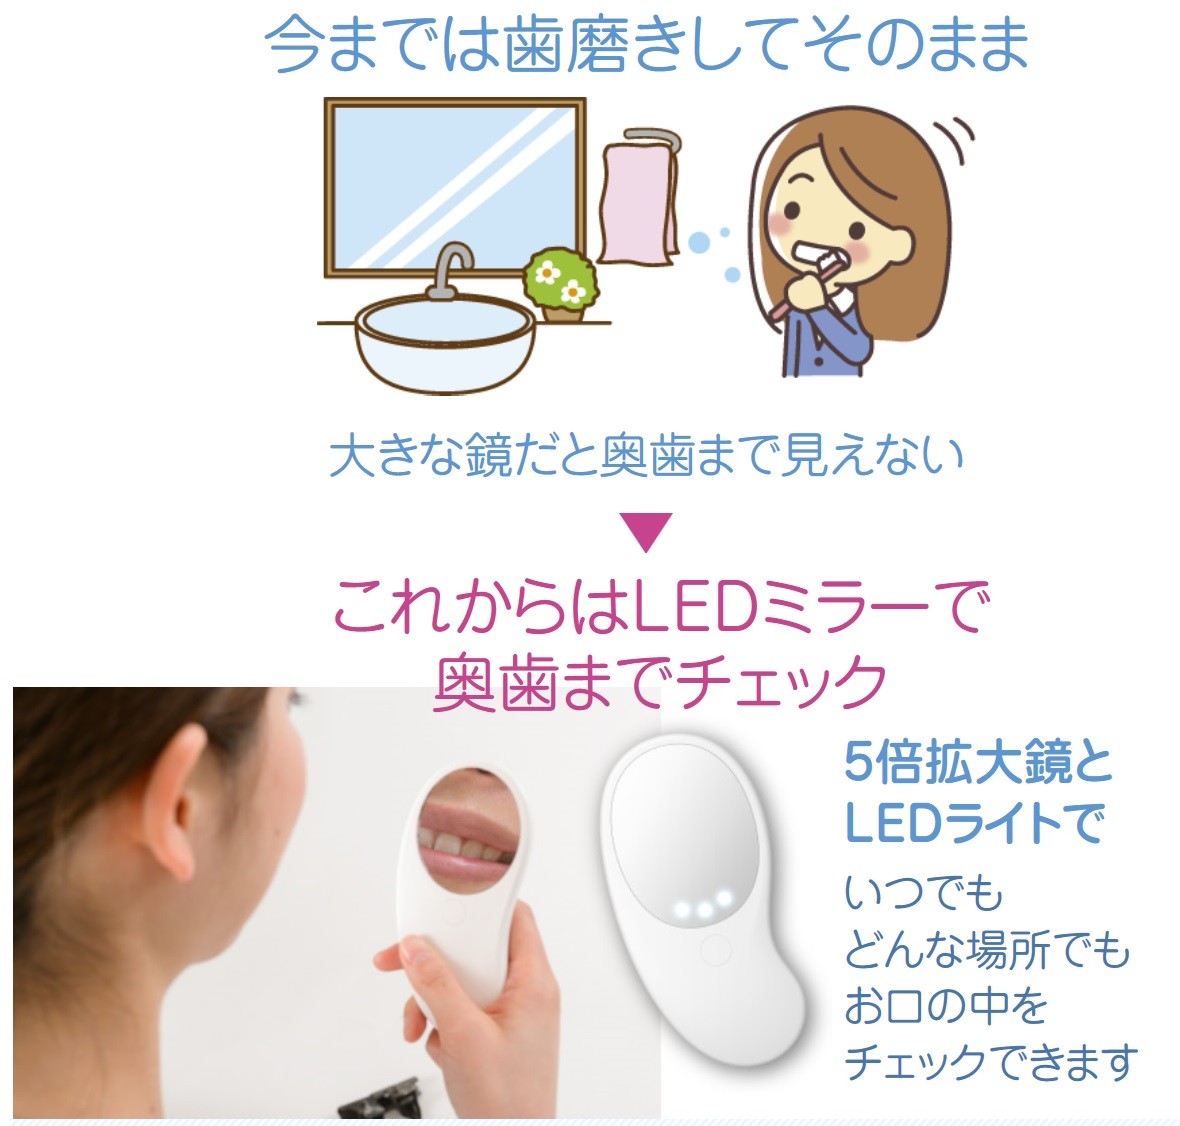 オーラクリーンデンタルＬＥＤミラー 歯磨き セルフチェック デンタル LED ミラー ライト付き 5倍 拡大鏡 歯鏡  :bd011:セレクトショップMOMO - 通販 - Yahoo!ショッピング